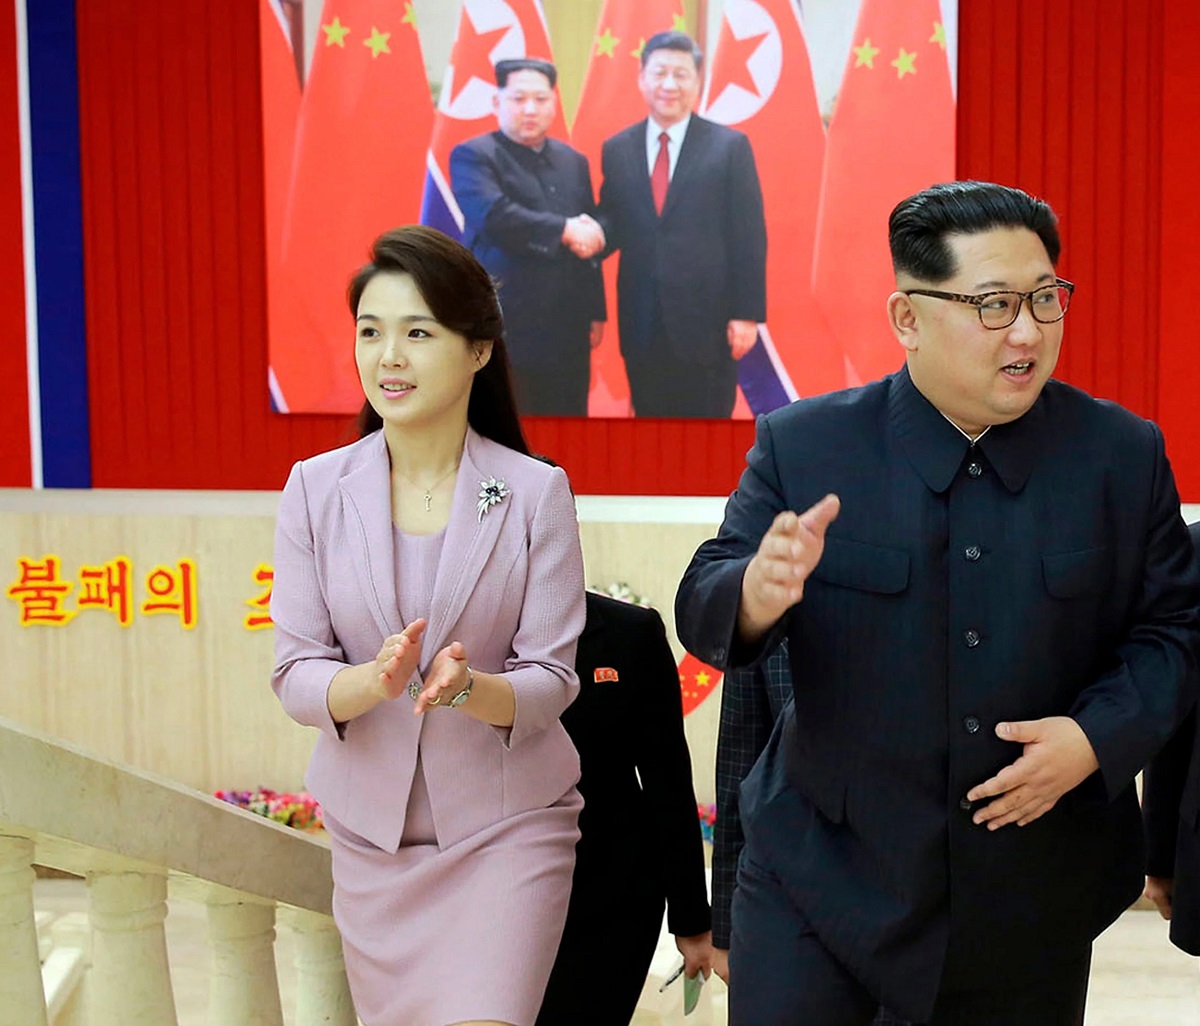 همسر رهبر کره شمالی عکس6